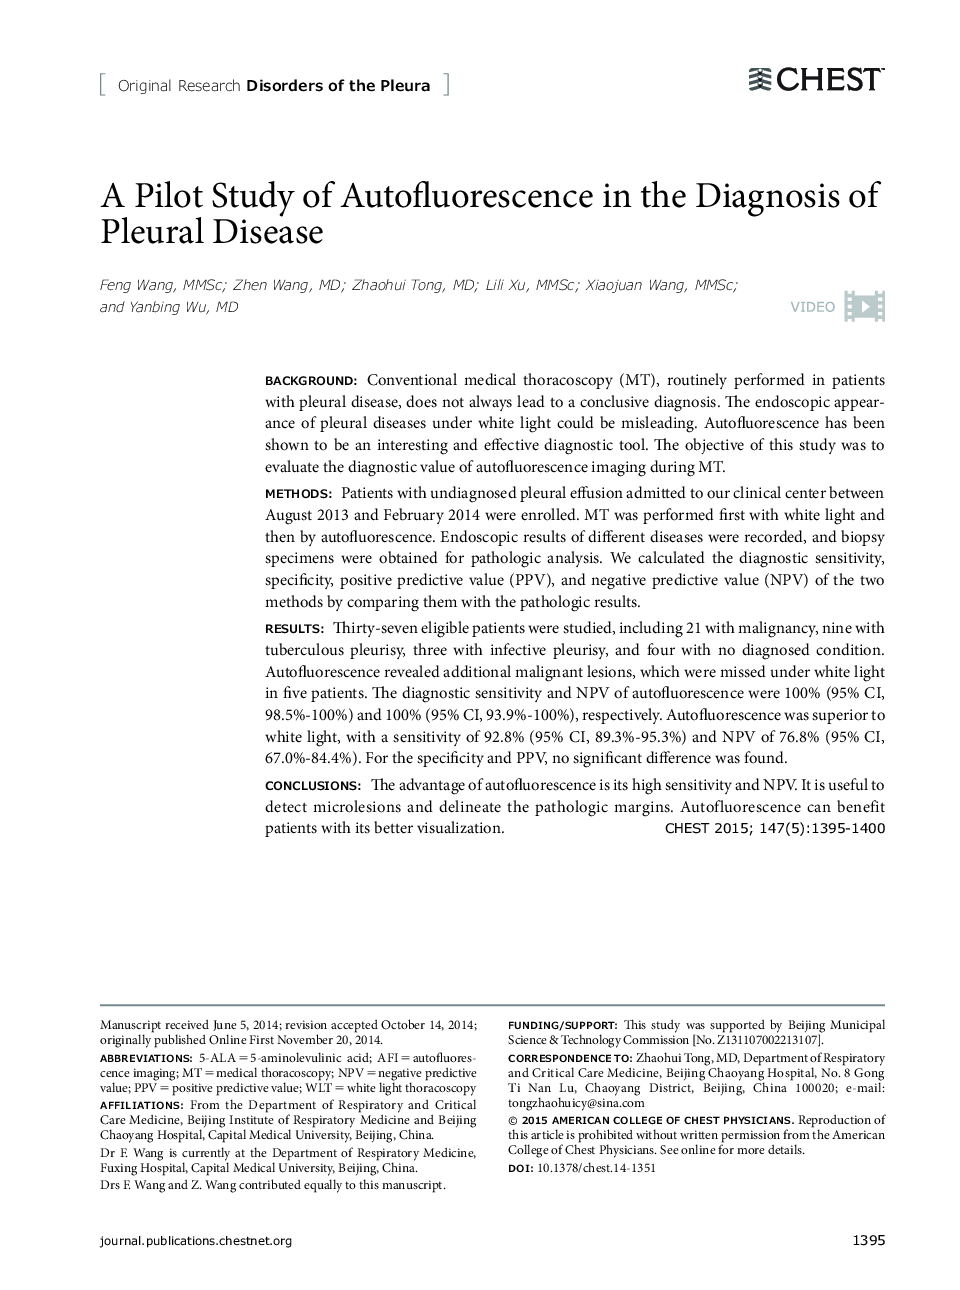 یک مطالعه آزمایشی خودکار فلوئورسانس در تشخیص بیماری پلورال 